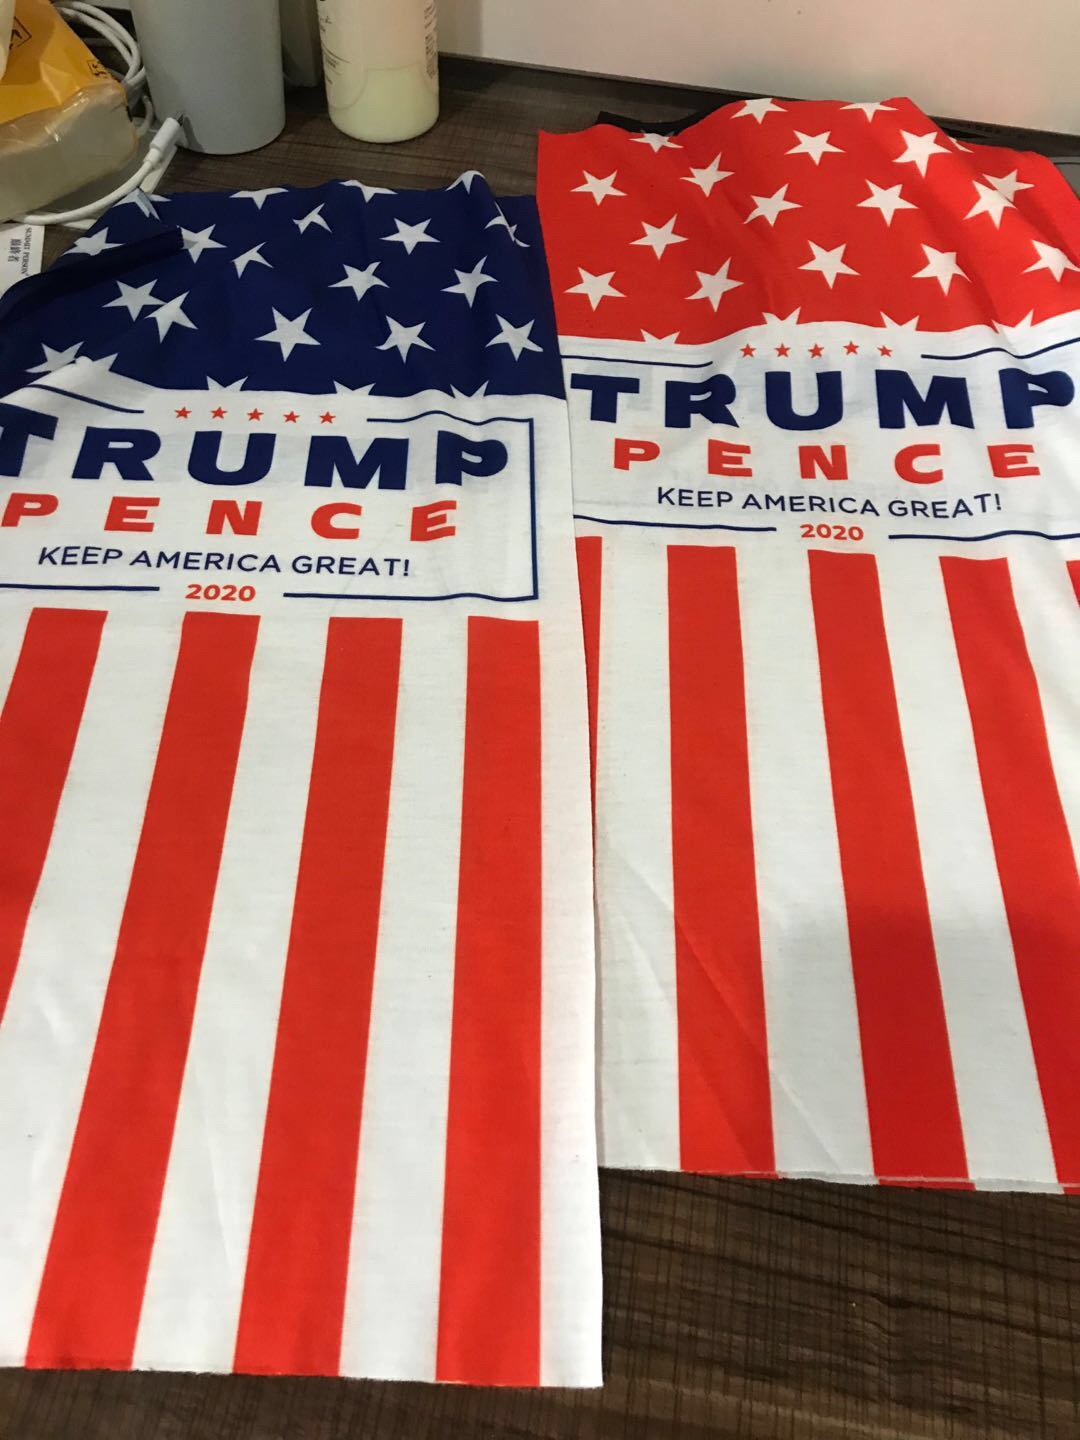 大量美国总统大选的应援物品出口自义乌，例如支持特朗普的头巾、旗帜、面具，以及各种五花八门的竞选口罩。